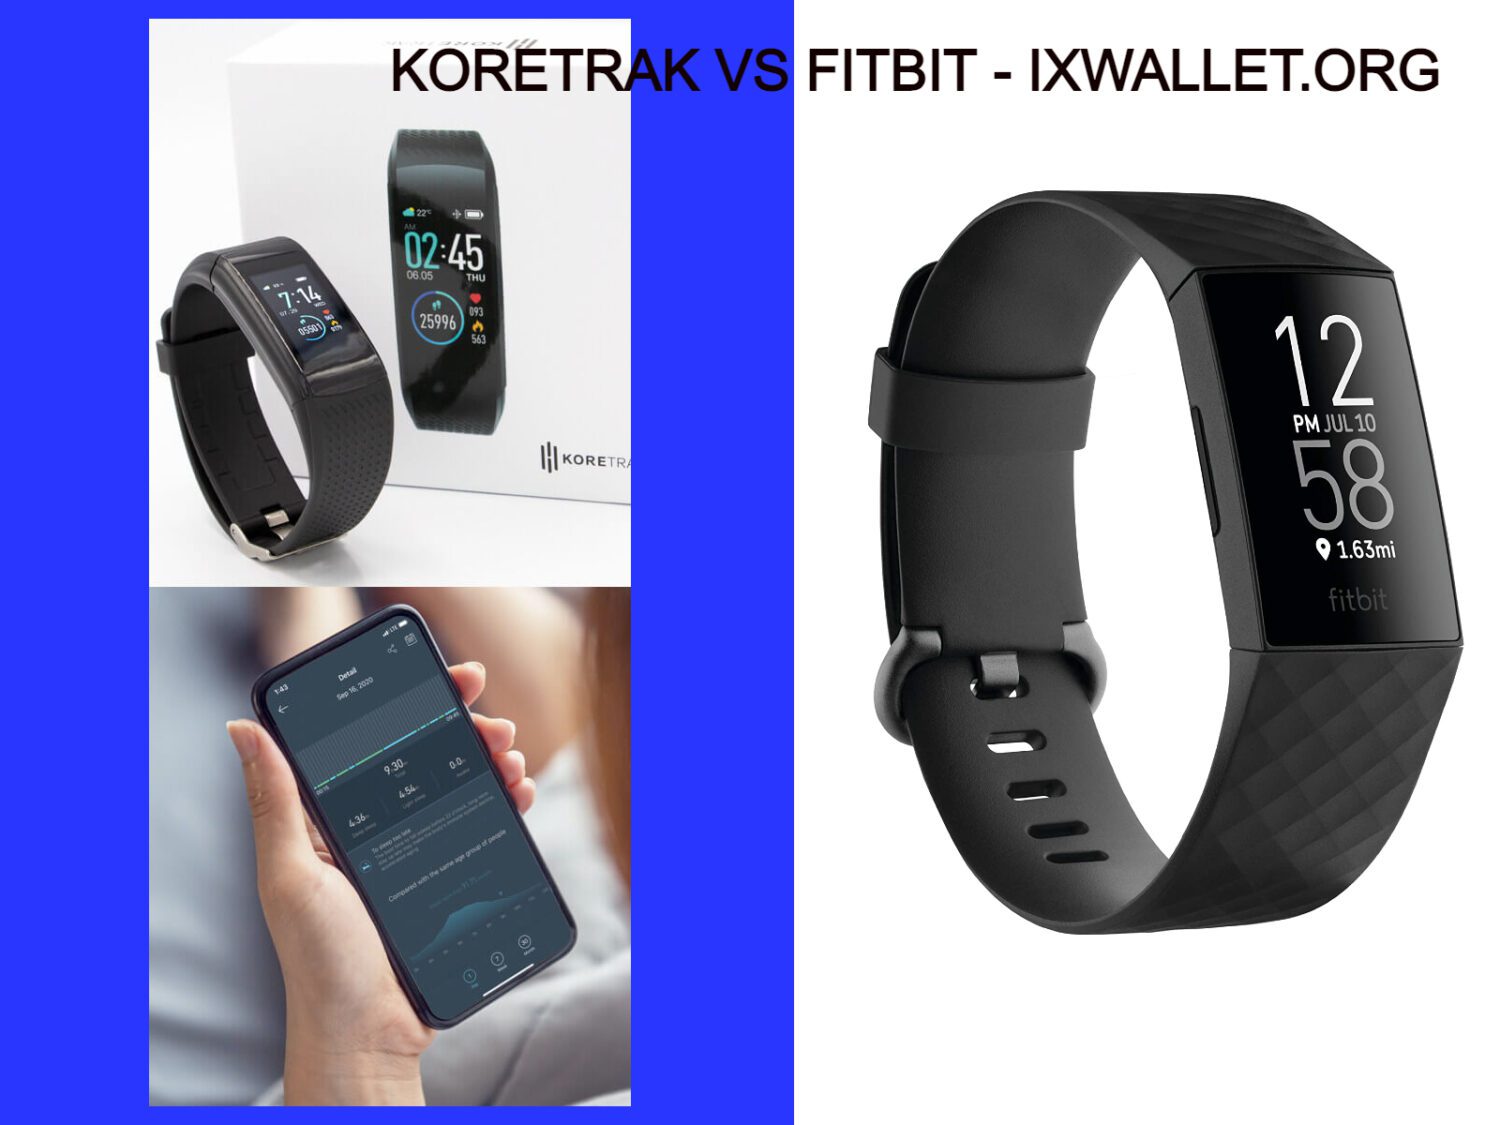 Koretrak Vs FitBit - Full Comparison at IXWALLET.ORG